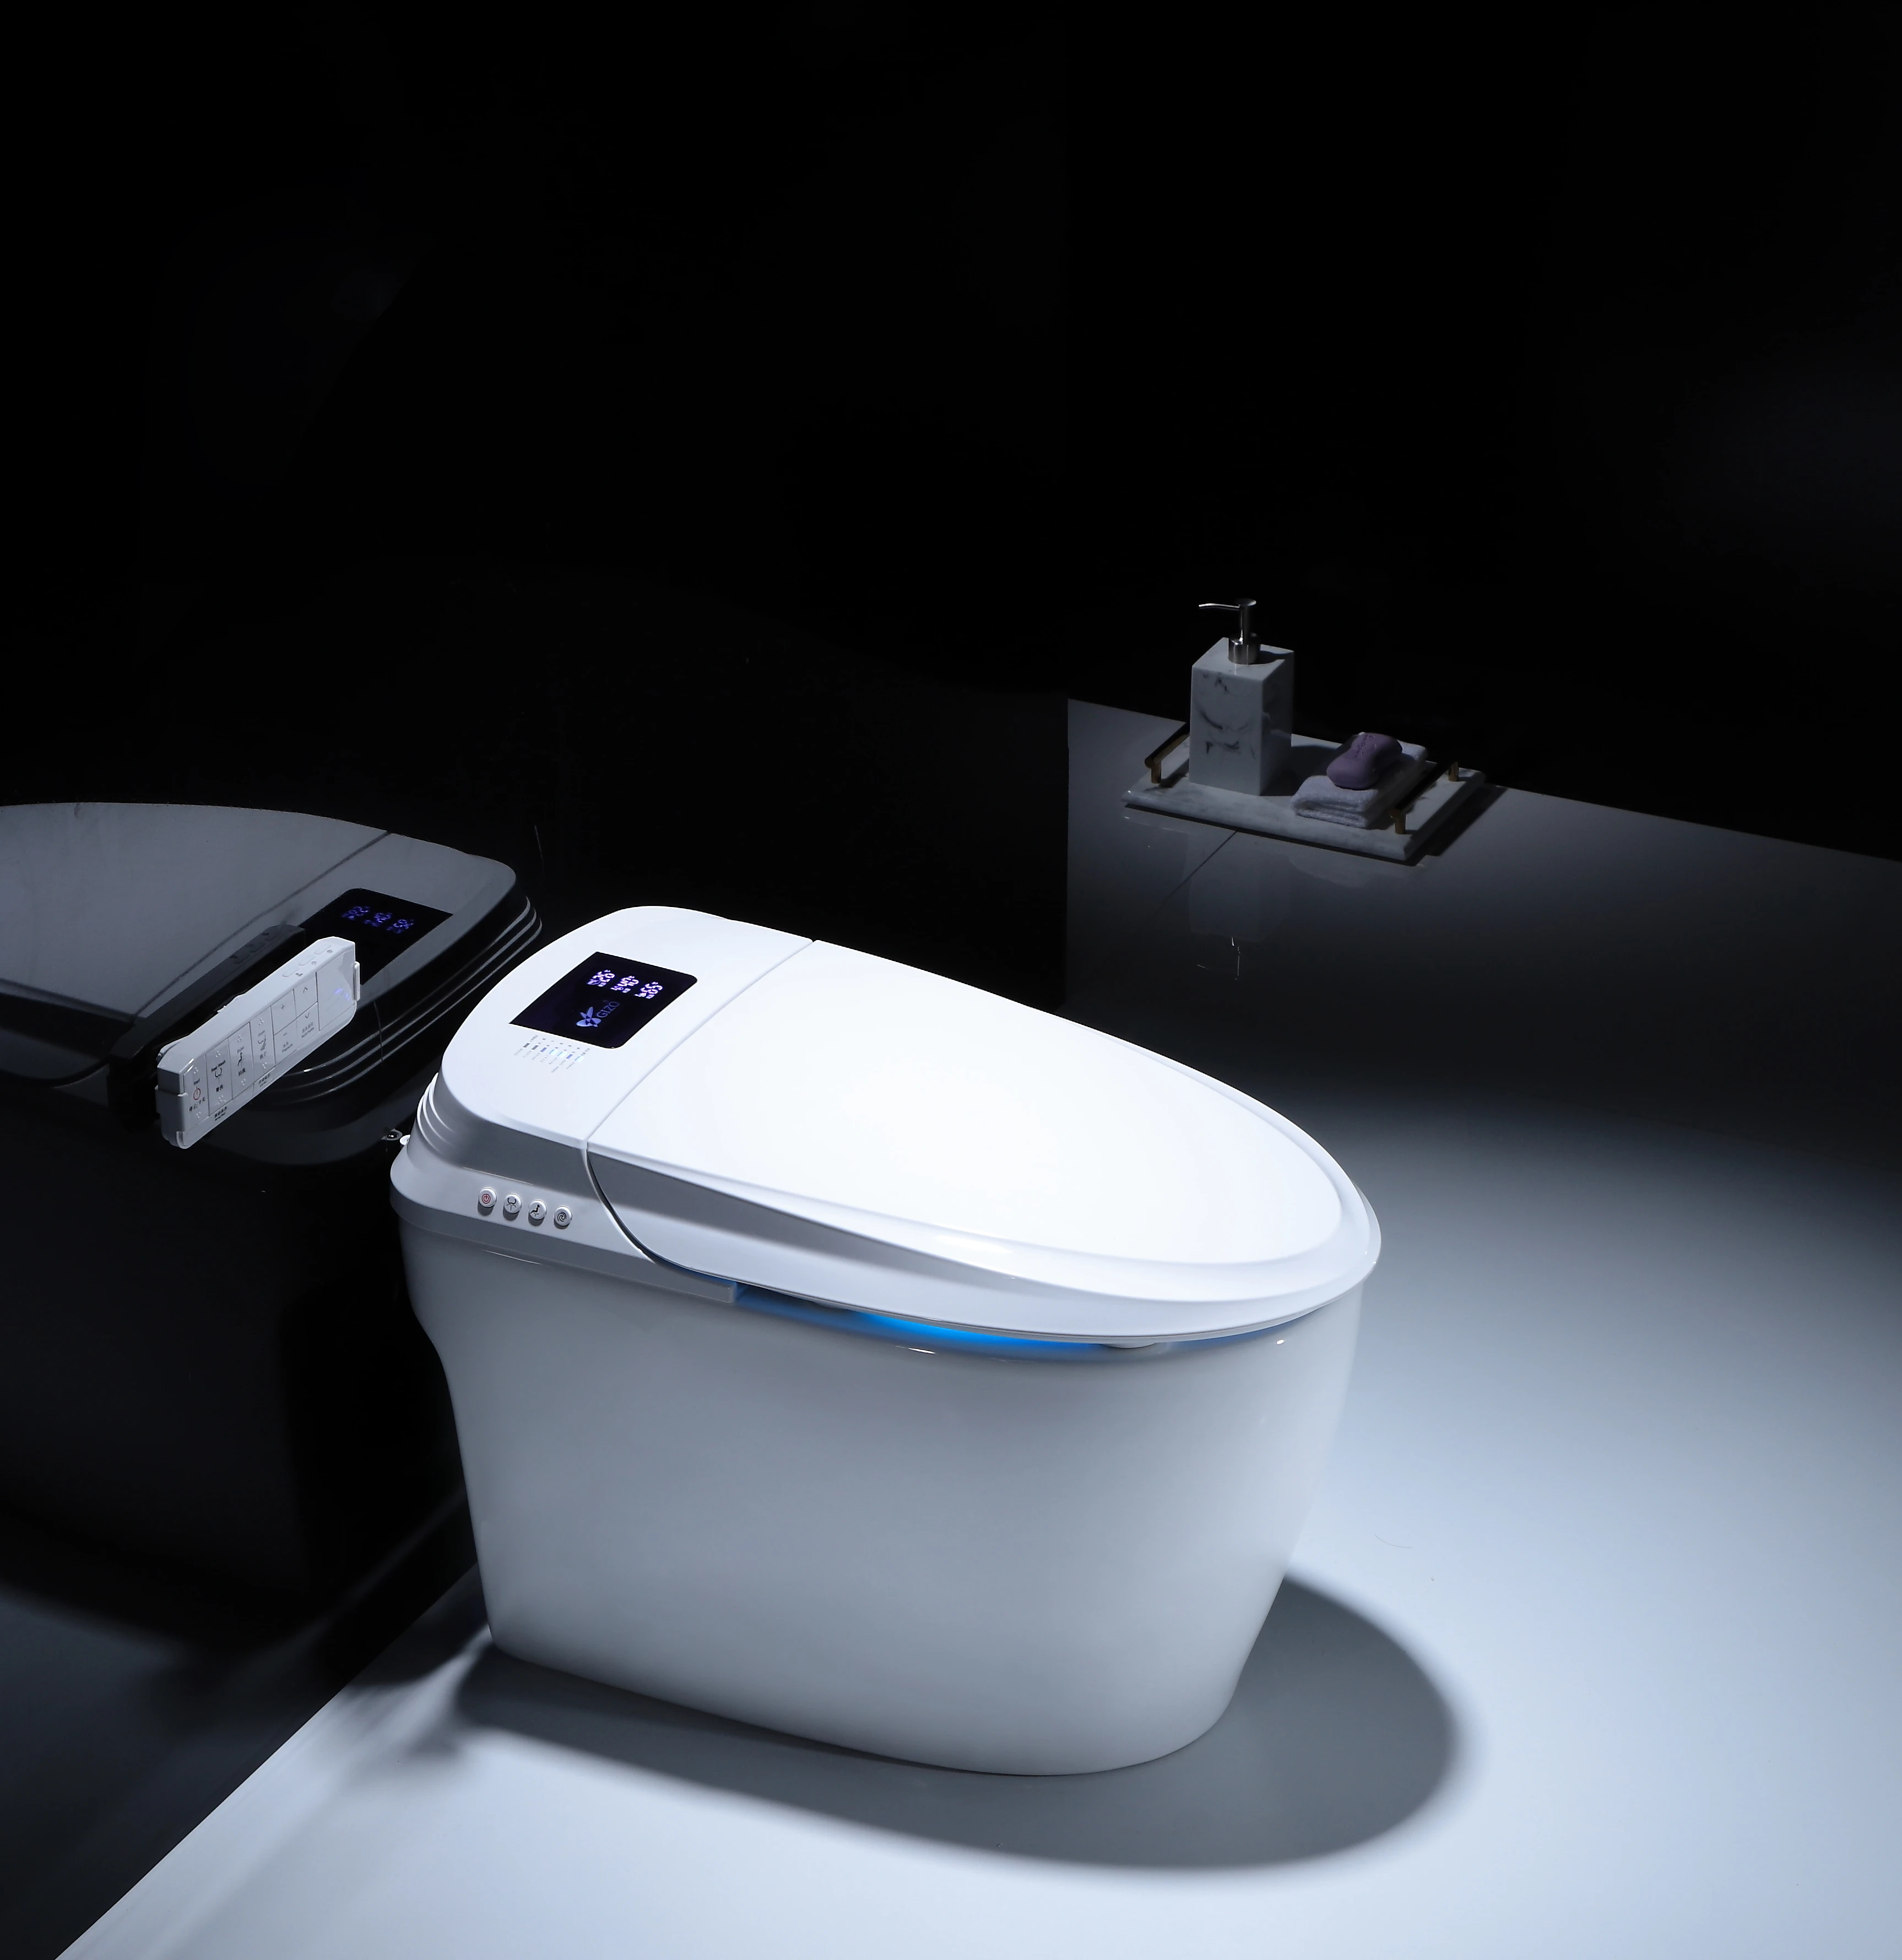 Slimme Wc bril Elektronische Bidet Schoon Droog Seat Wc Intelligente Wc Seat Led Licht Wc Keramische Sanitaire Wc|Toiletten| AliExpress